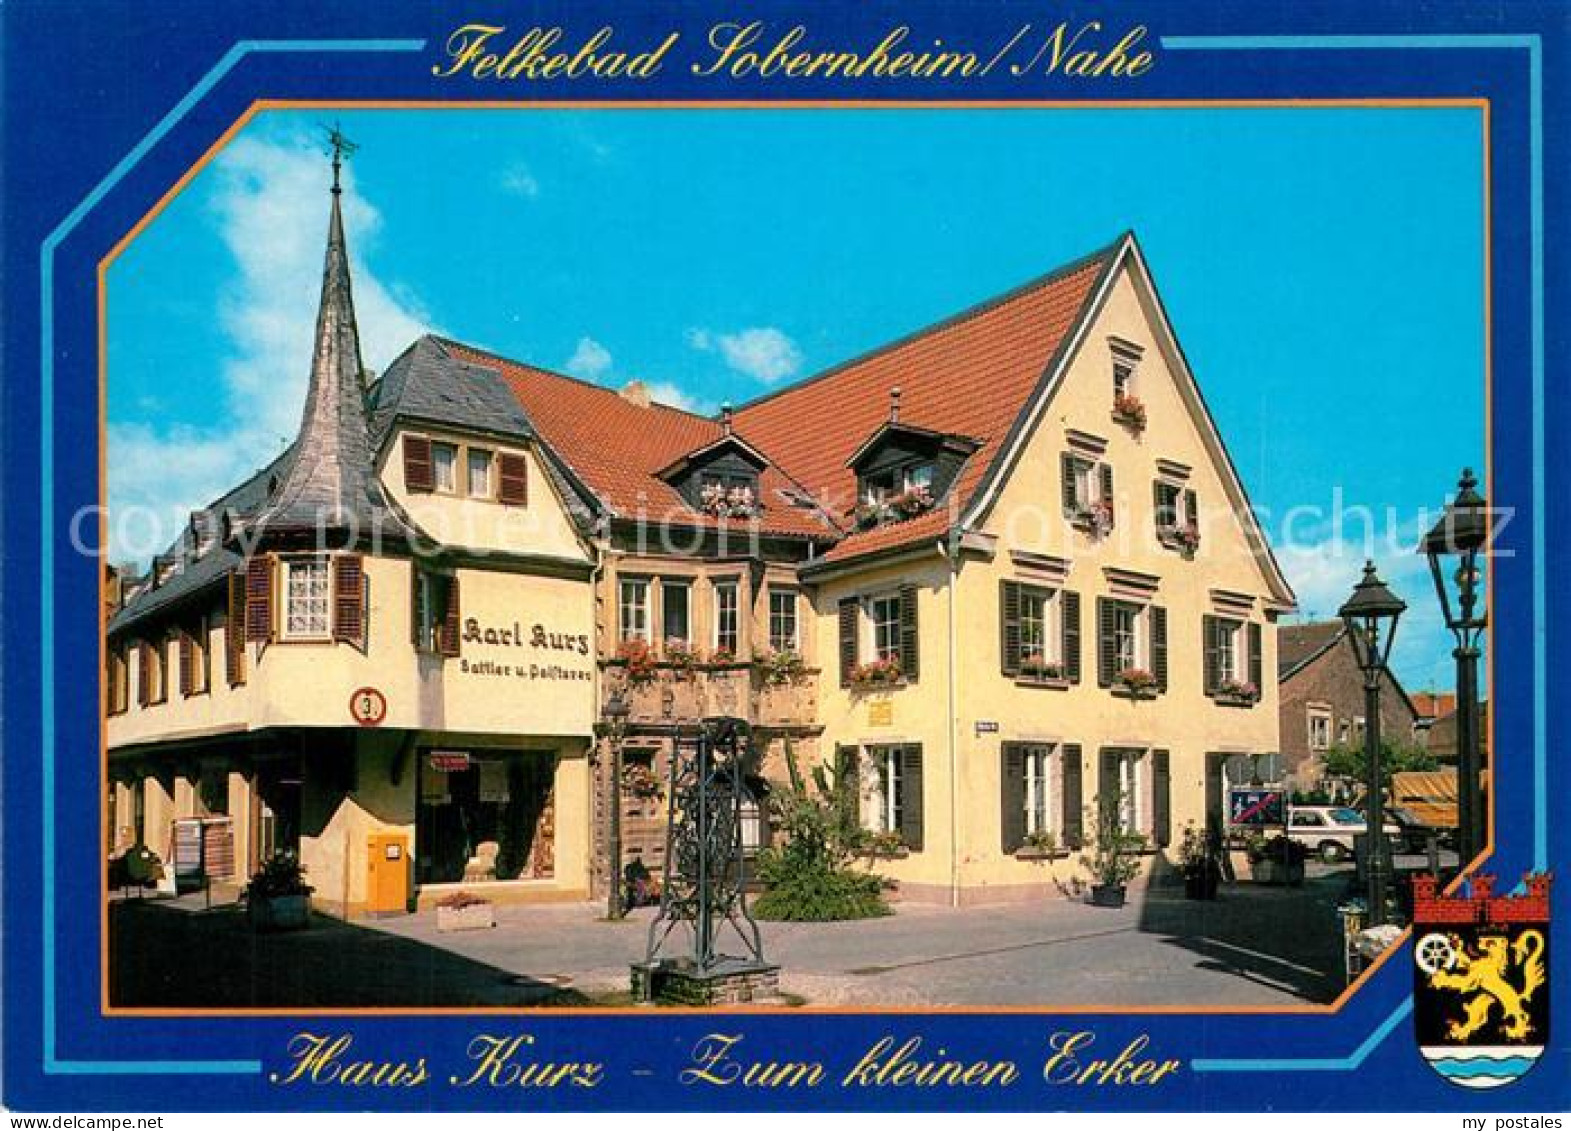 73257498 Bad Sobernheim Felkebad Haus Kurz Zum Kleinen Erker Bad Sobernheim - Bad Sobernheim